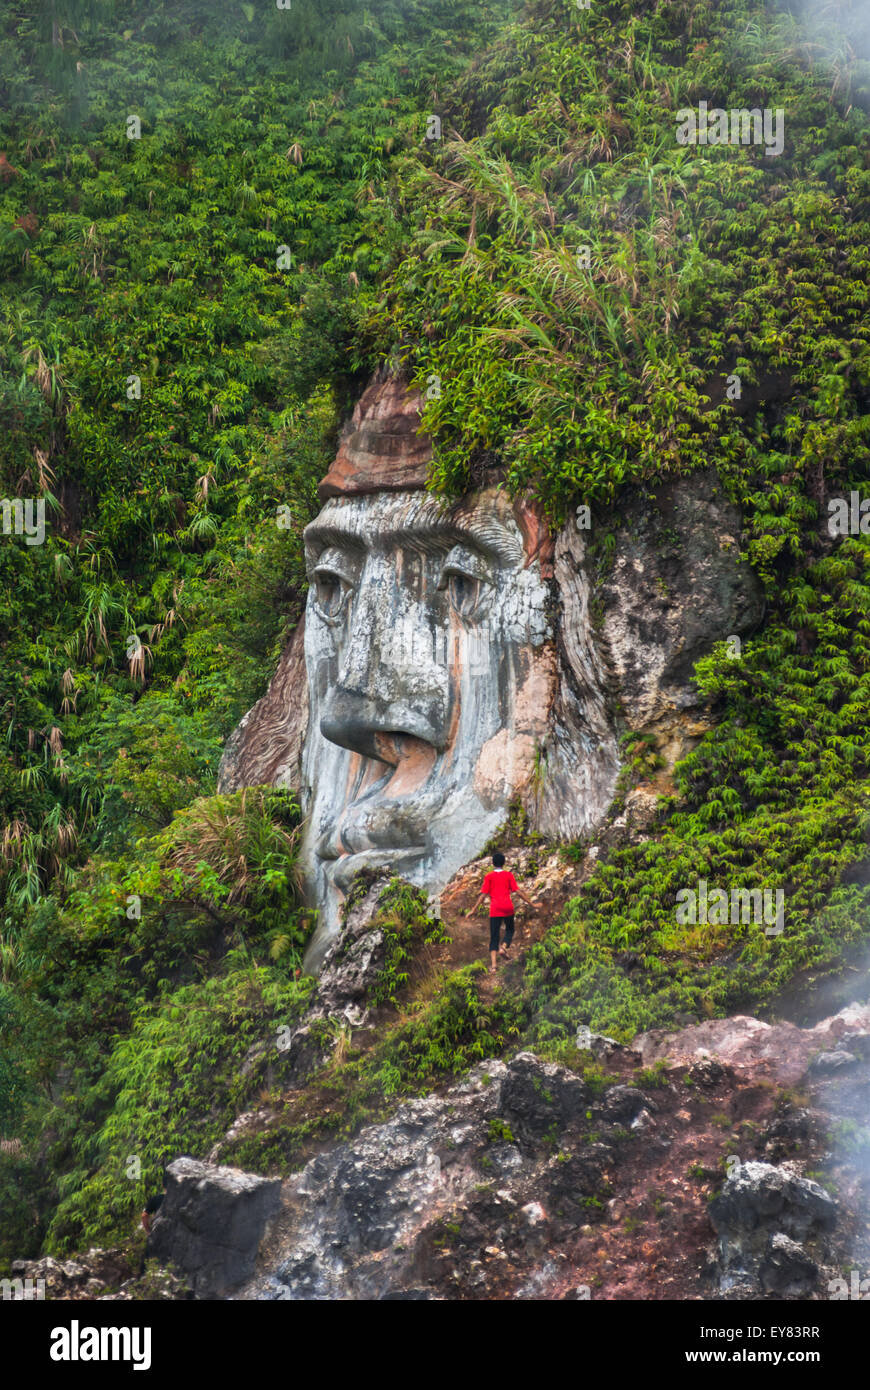 Ein Besucher wird in der Nähe einer riesigen Gesichtsformation gesehen, die den Charakter von Toar (eine uralte Figur) im Bukit Kasih in North Sulawesi, Indonesien, veranschaulicht. Stockfoto